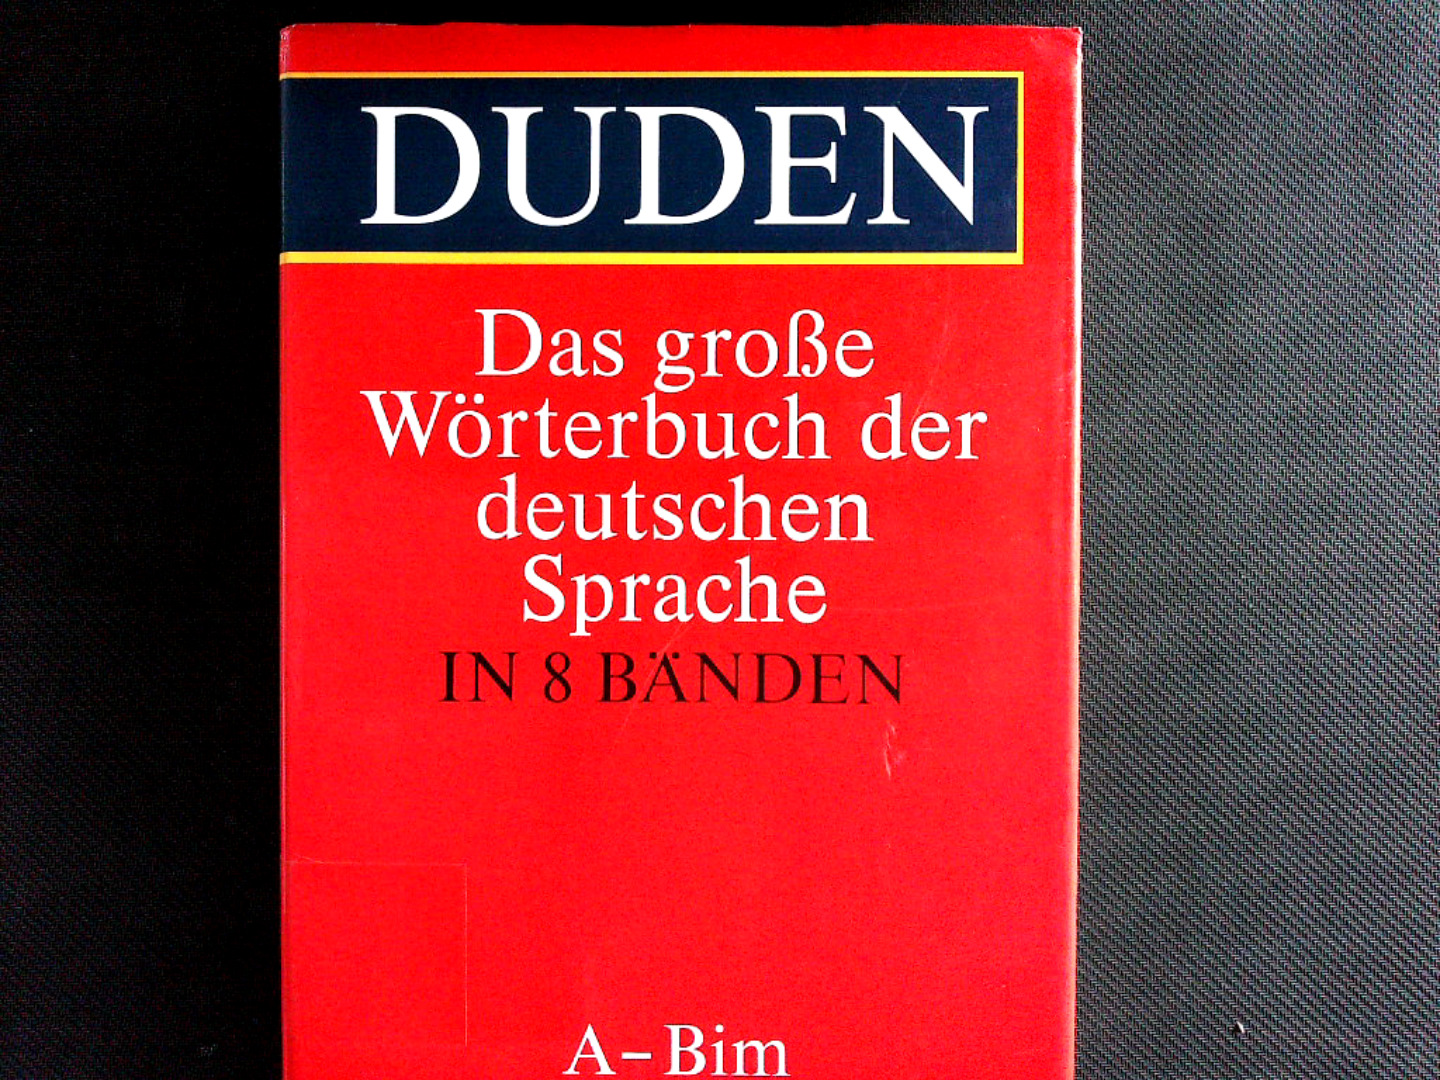 Duden, Das grosse Wörterbuch der deutschen Sprache. Bd. 1., A - Bim. - Drosdowski, Günther